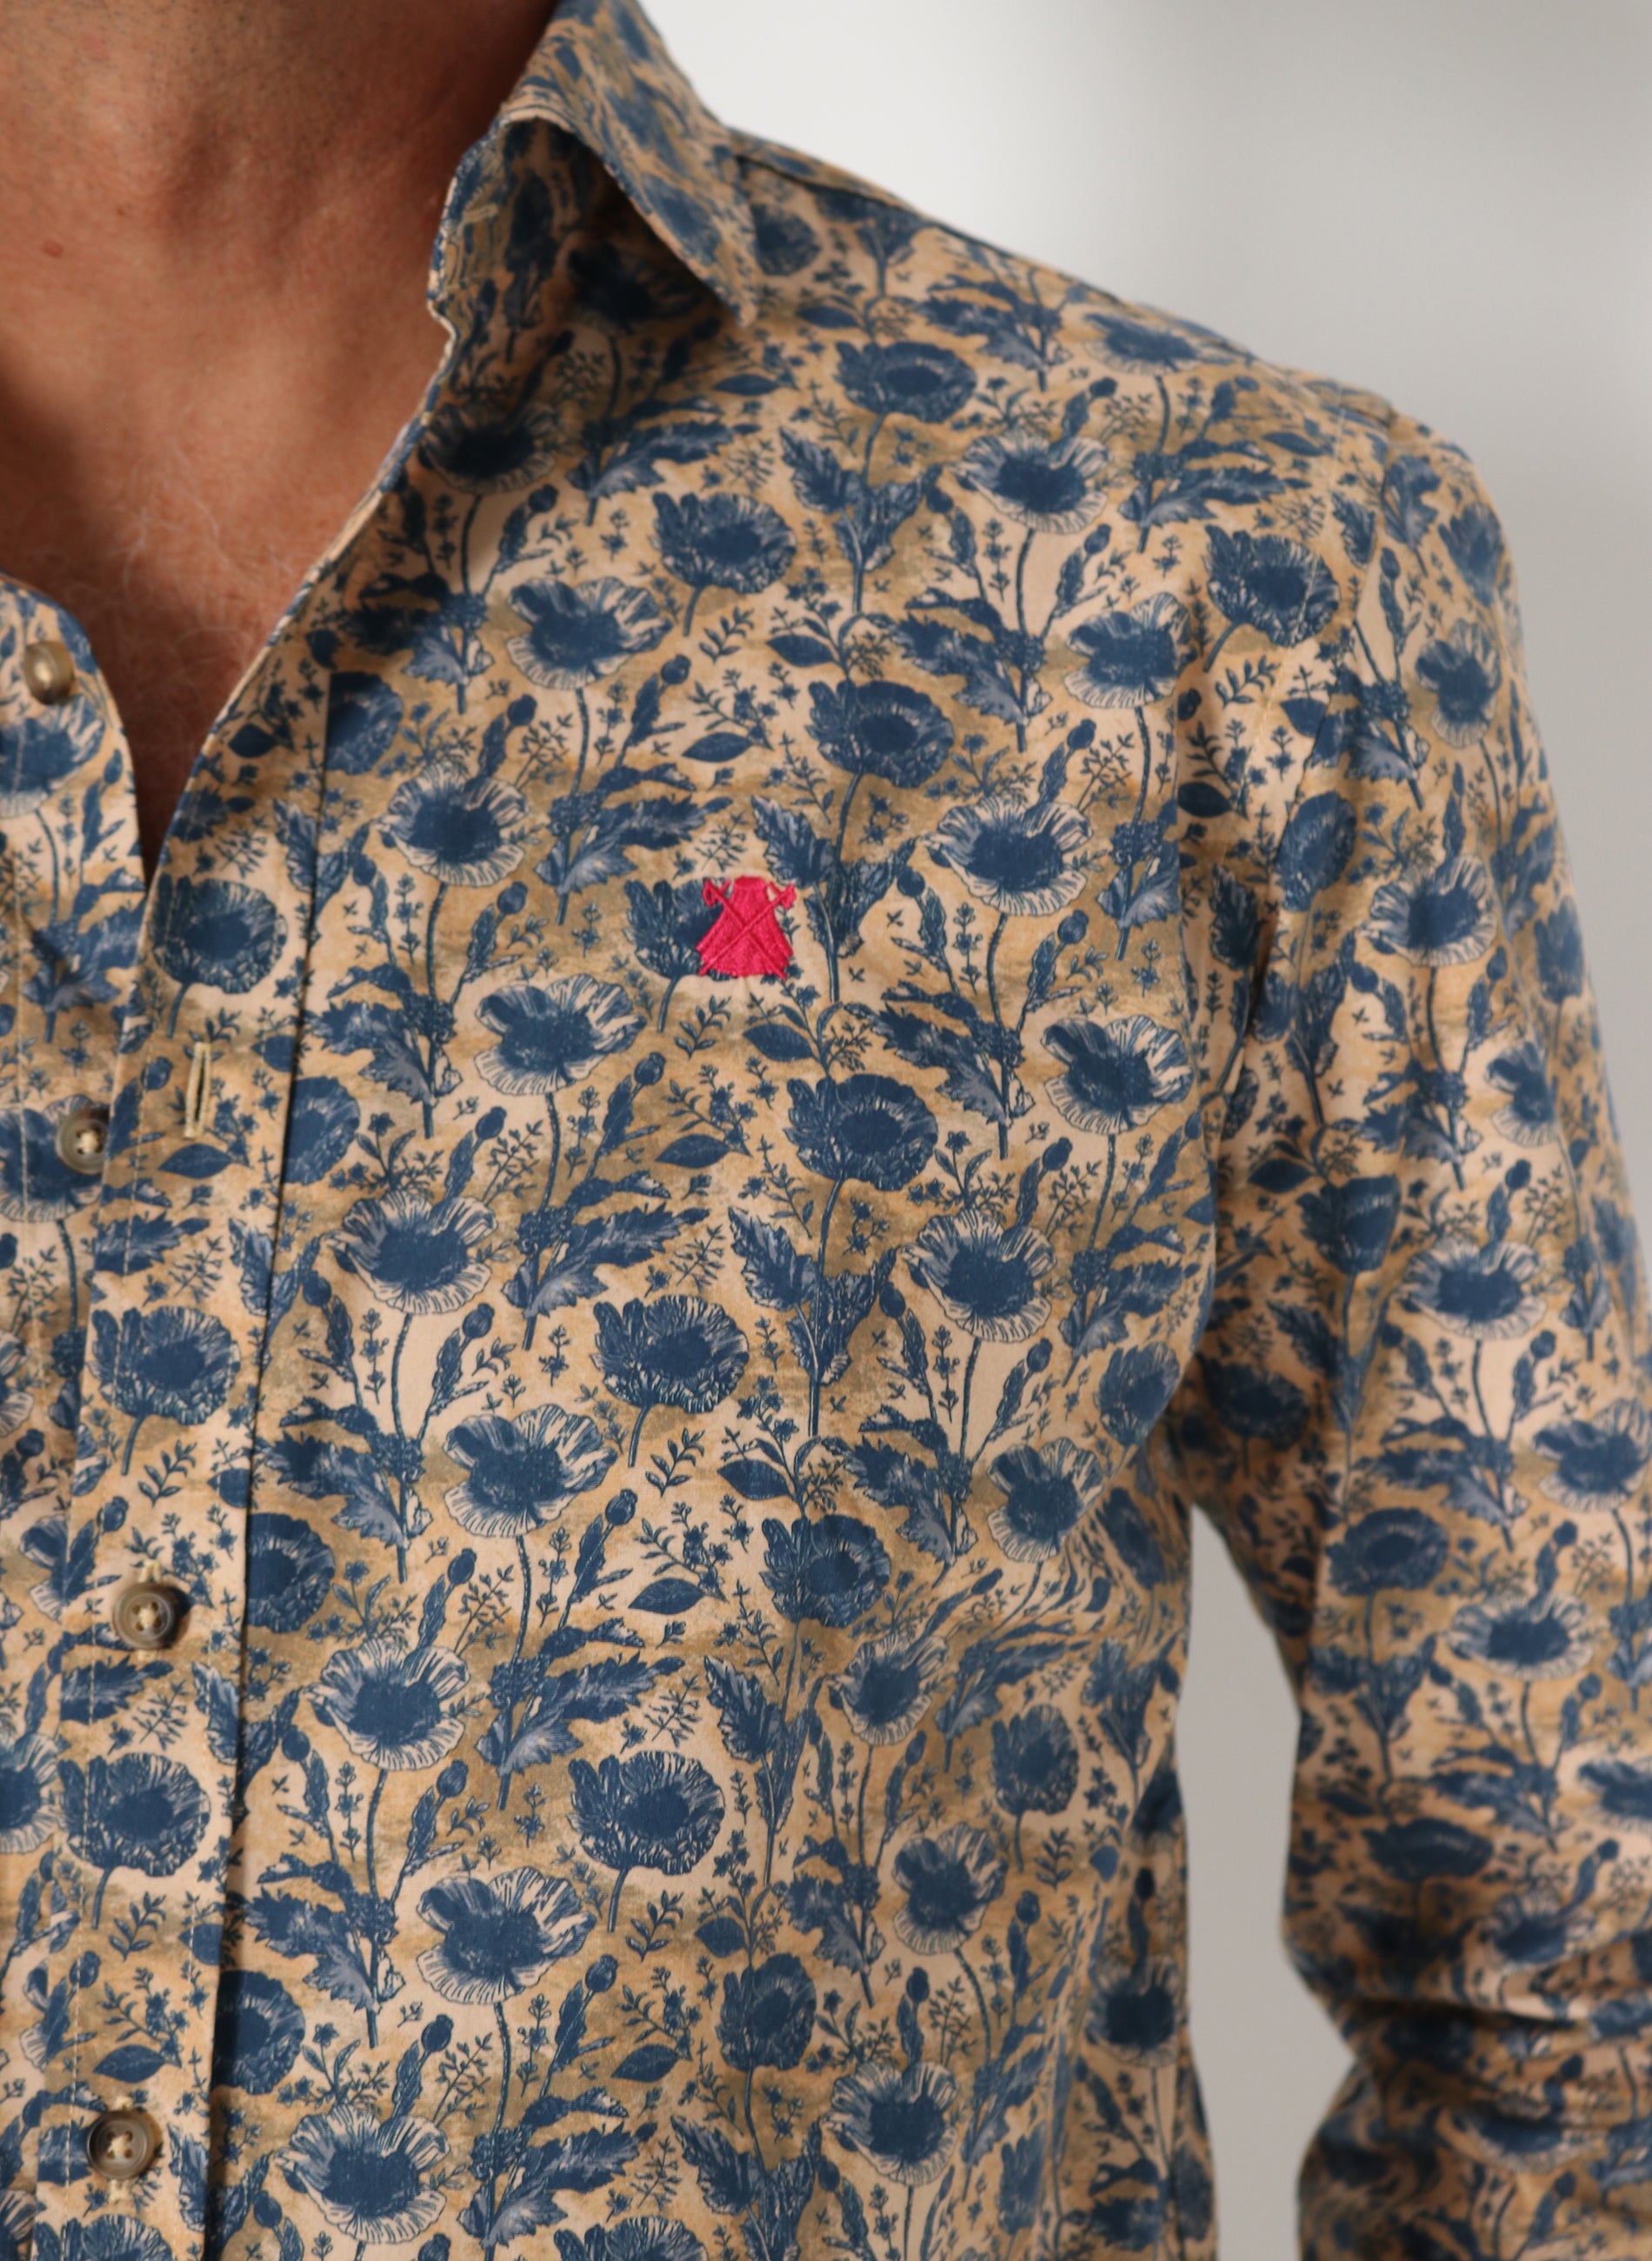 Albero und blaues Blumen-Druckhemd für Männer